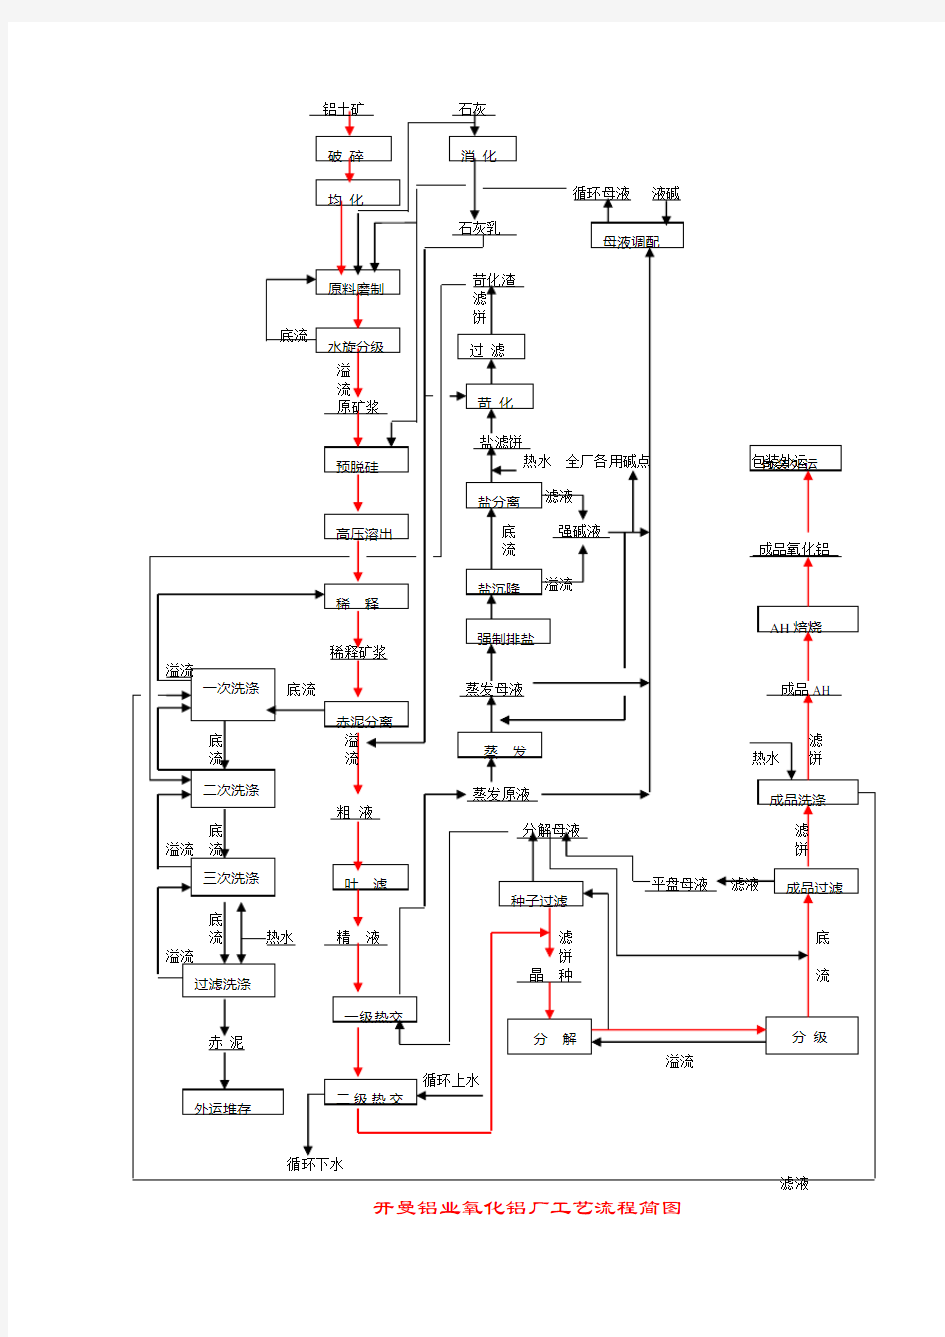 拜耳法氧化铝生产工艺流程框图